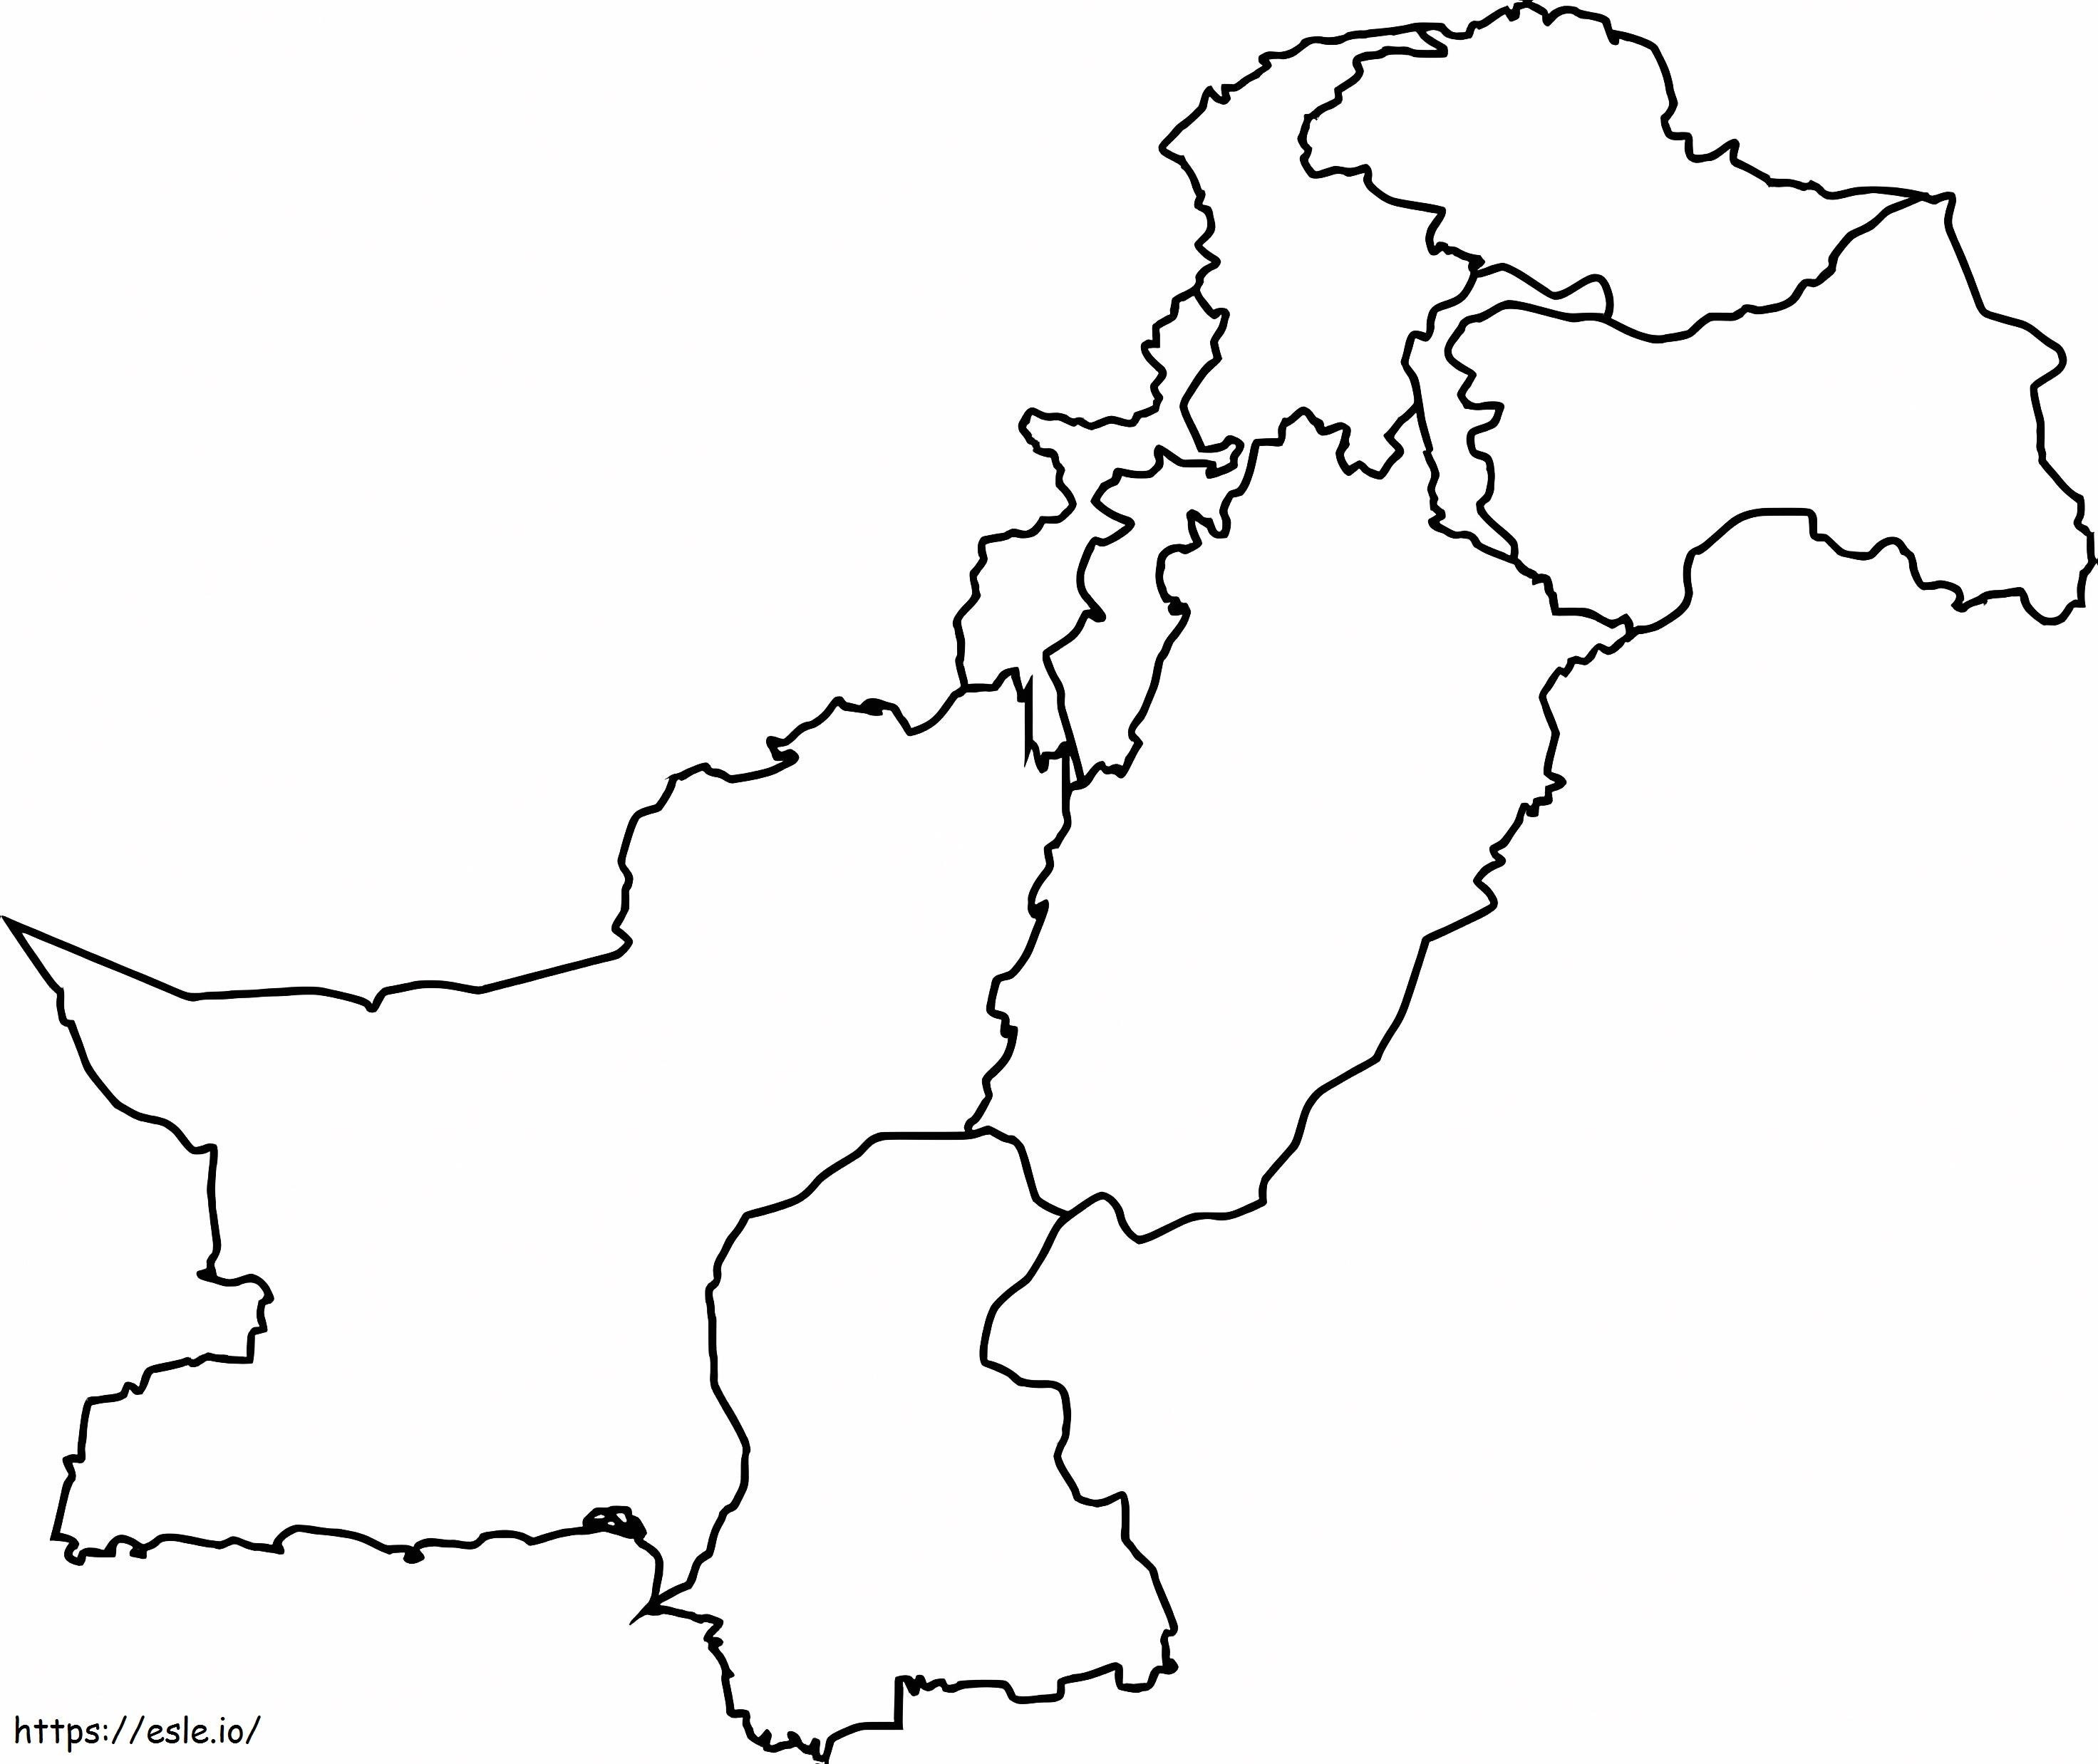 Mapa do Paquistão para colorir